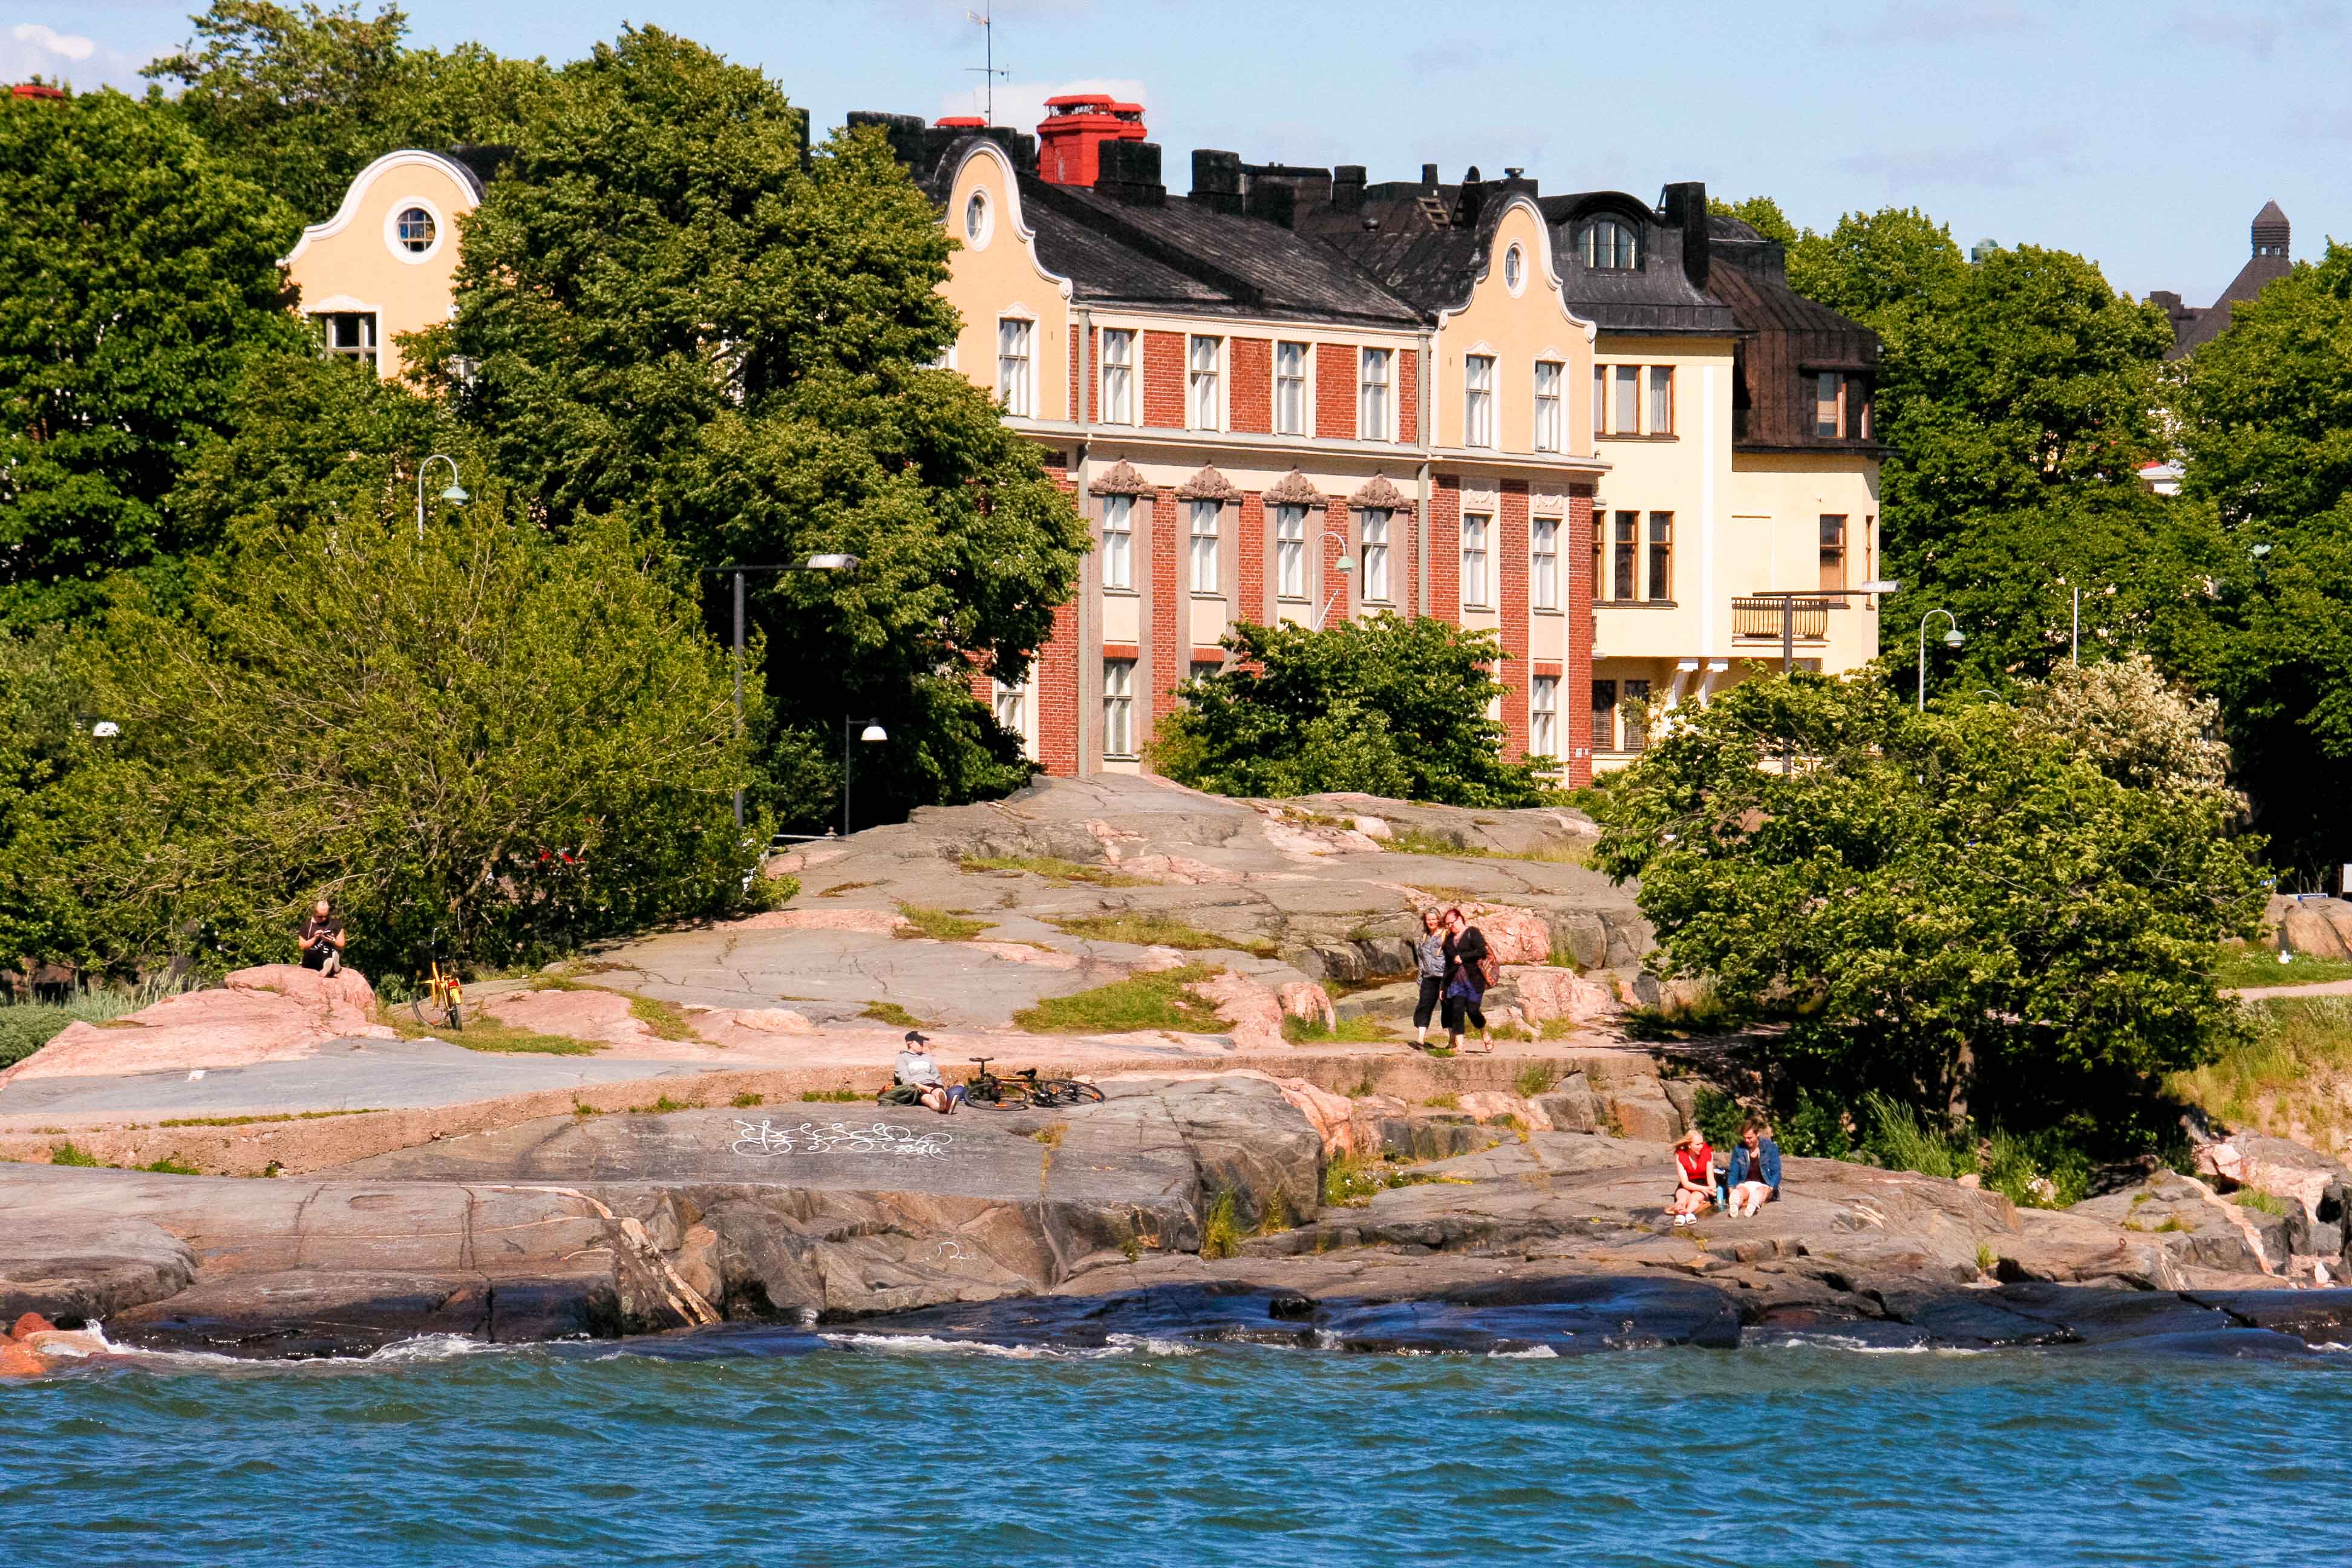 Imagen de un paisaje con arquitectura art nouveau tomada desde la línea de costa del parque Kaivopuisto en Helsinki